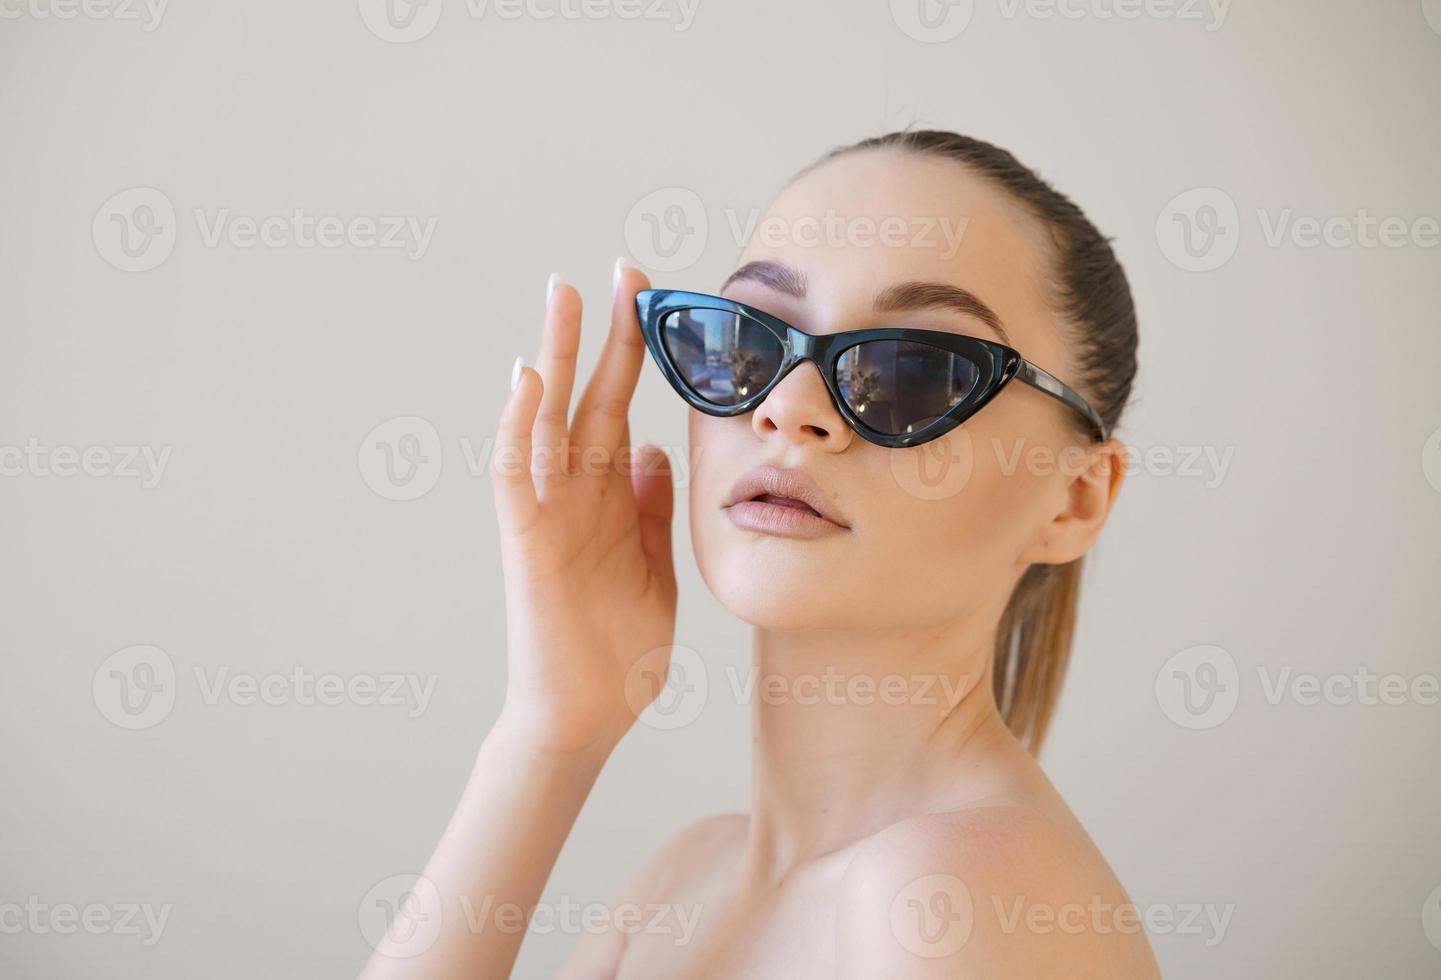 chica modelo de moda de belleza con cabello castaño con elegantes toques de gafas de sol foto